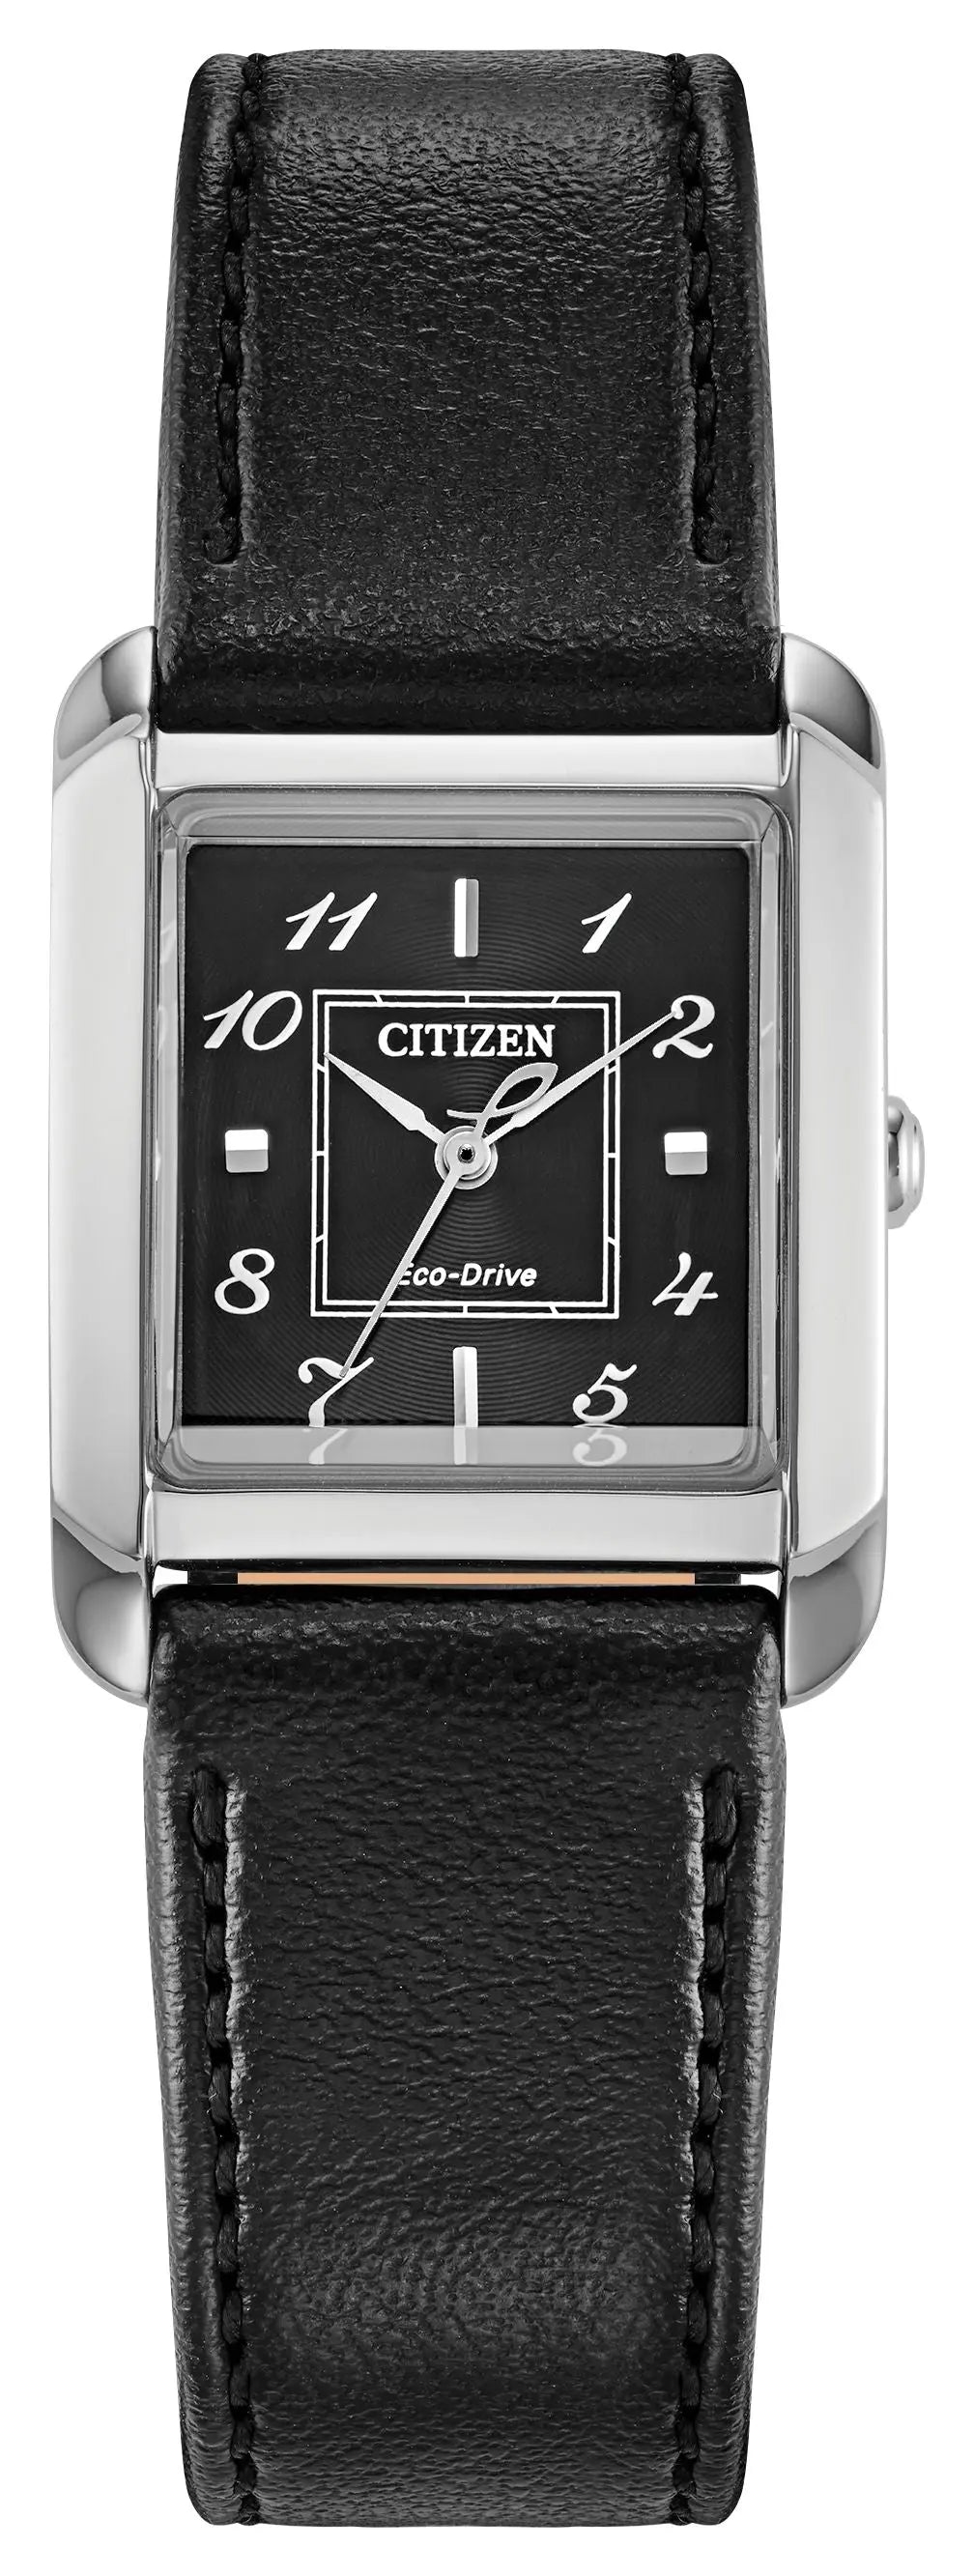 Copy of Citizen EW5600-52D Watch Technicians Store